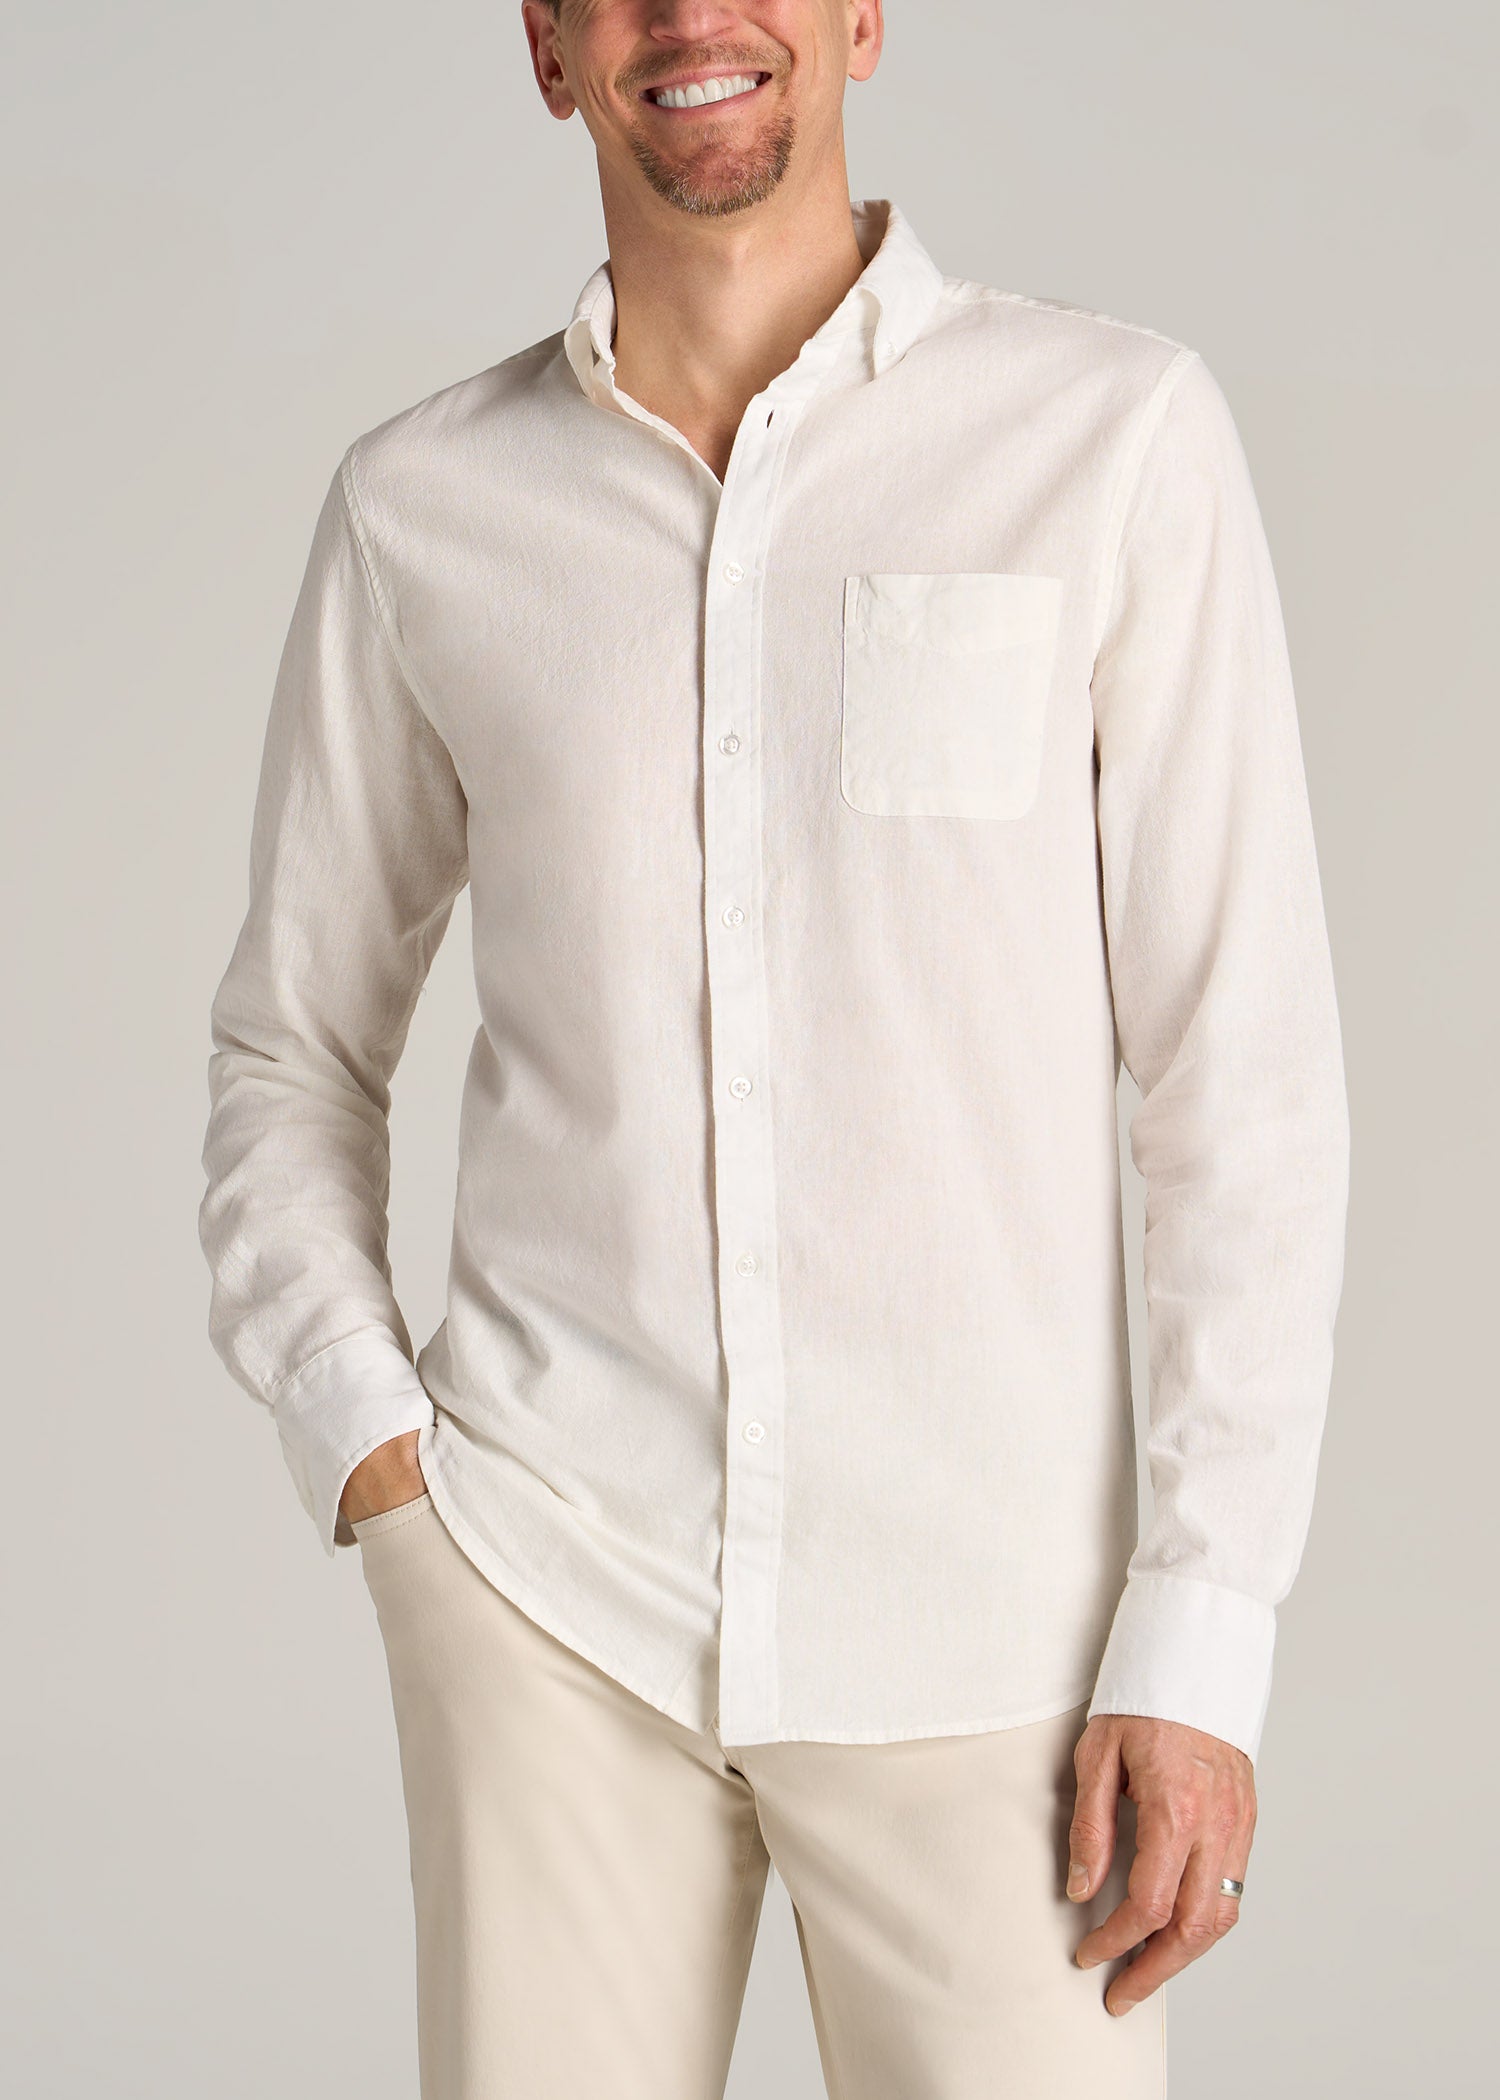 Linen Long Sleeve Shirt for Tall Men in Bright White